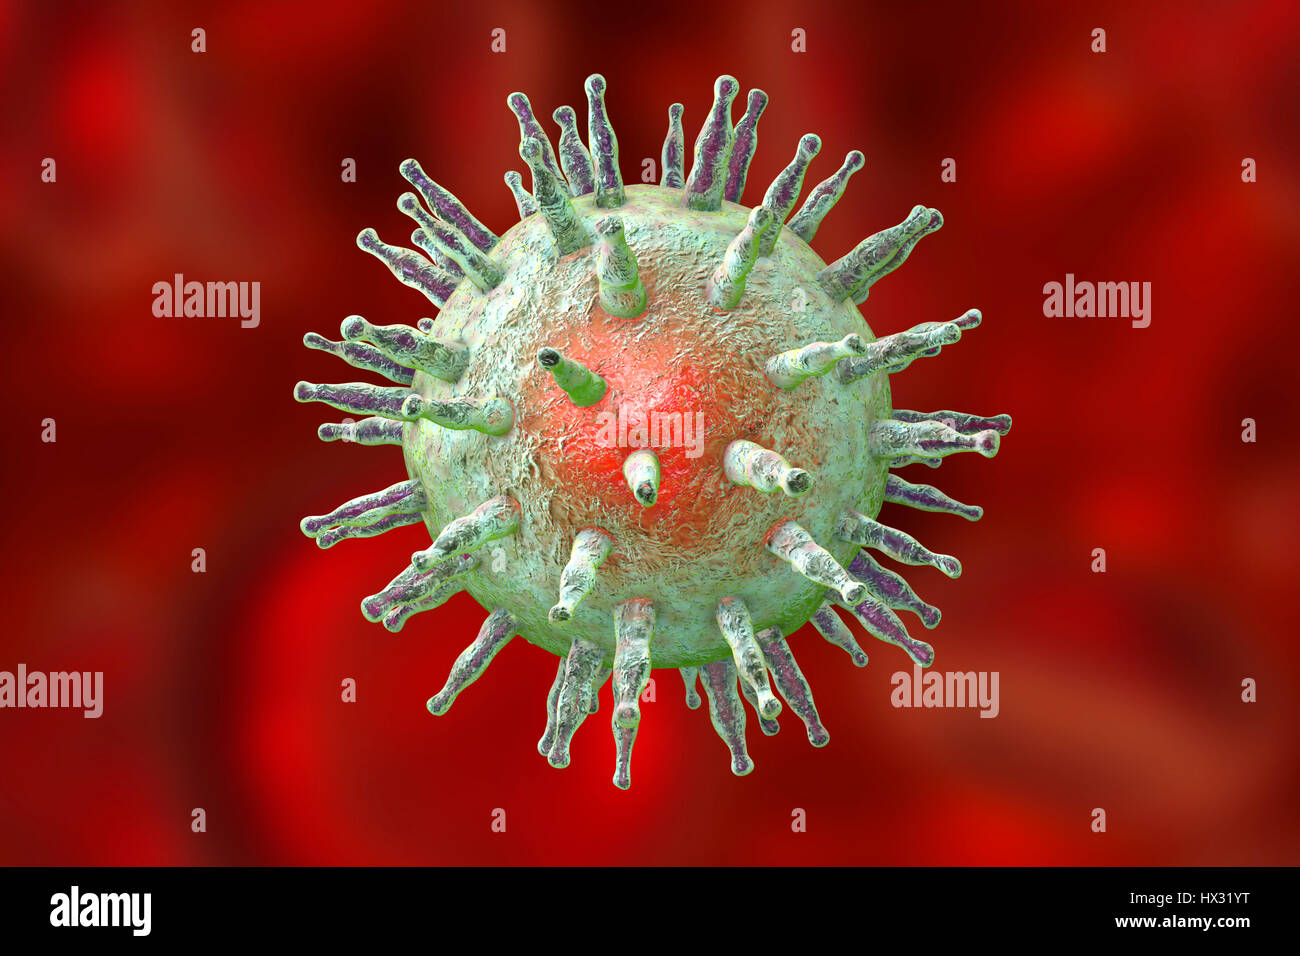 Il virus di Epstein-Barr (EBV), computer illustrazione. EBV, noto anche come virus di herpes umano 4, è 1 di 8 herpes virus che infetta l'uomo. È meglio conosciuta come la causa di mononucleosi infettiva (febbre ghiandolare), ma è anche associato ad alcune forme di cancro, includendo linfoma di Burkitt. In entrambe le infezioni, il virus infetta un tipo di globuli bianchi, i linfociti B. Infezione con EBV è comune e di solito innocuo; fattori addizionali di potenziare lo sviluppo di malattie più gravi. Foto Stock